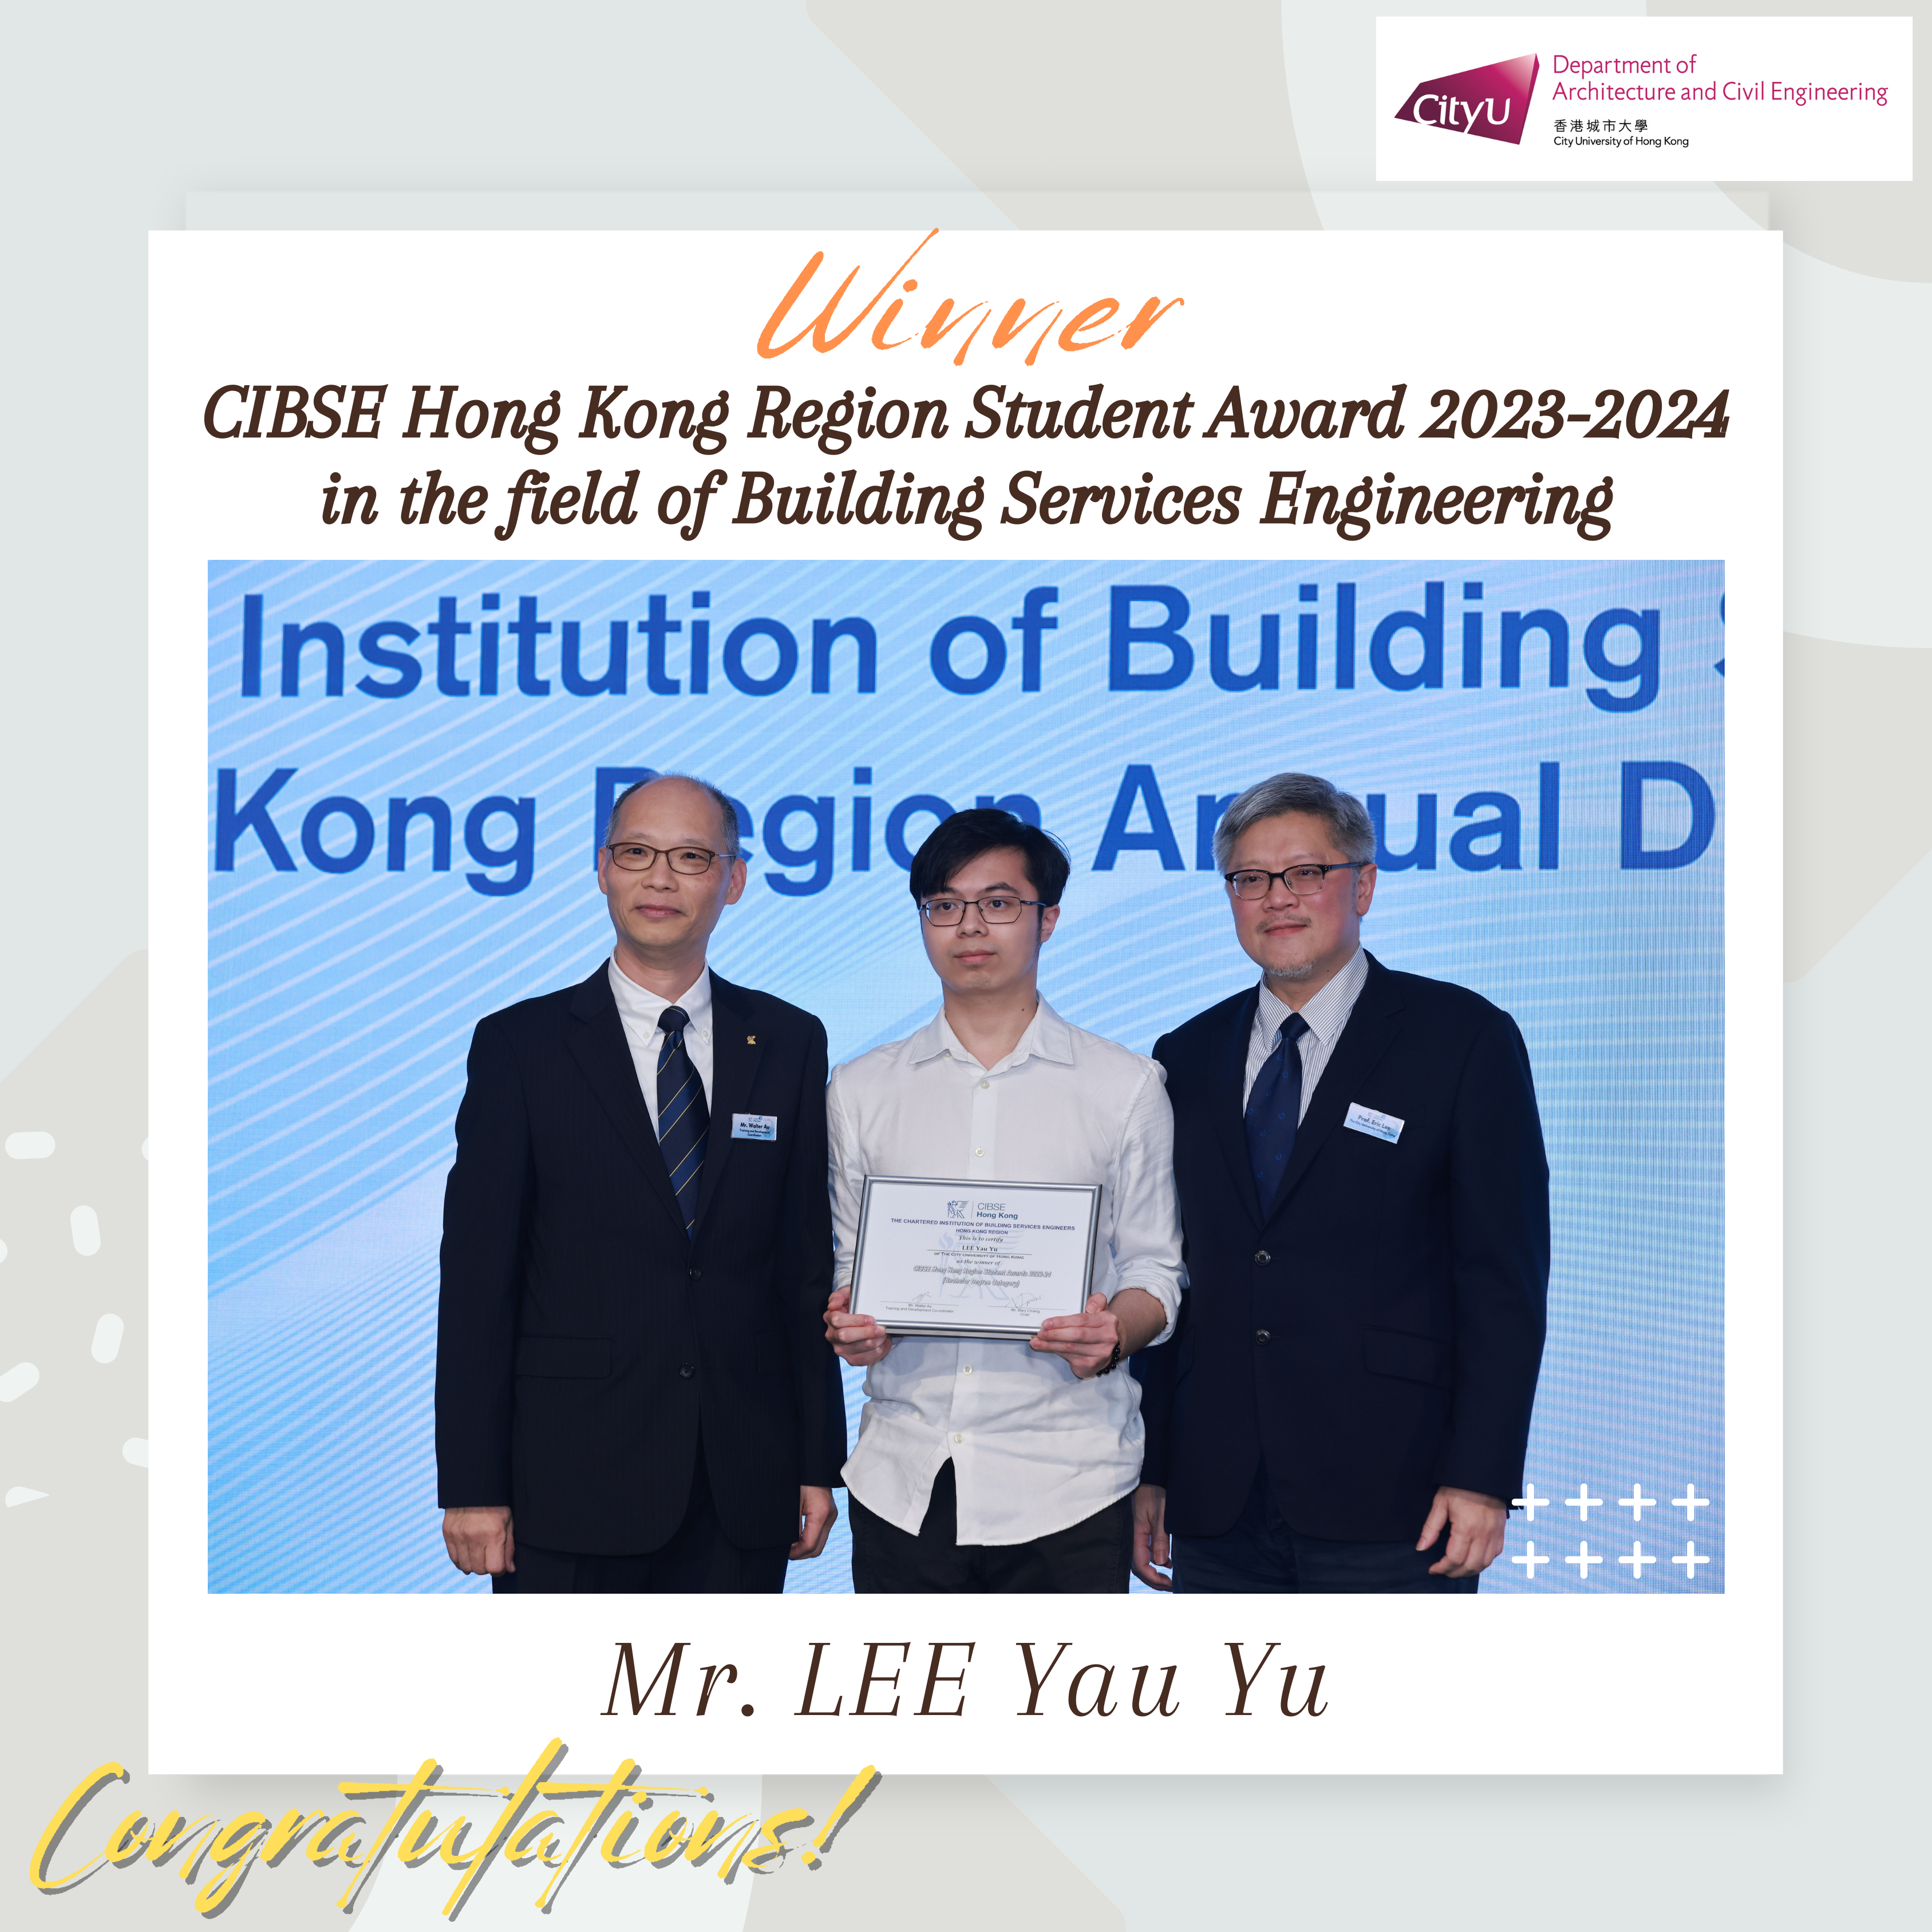 CIBSE Hong Kong Region Student Award .png (8.7 MB)